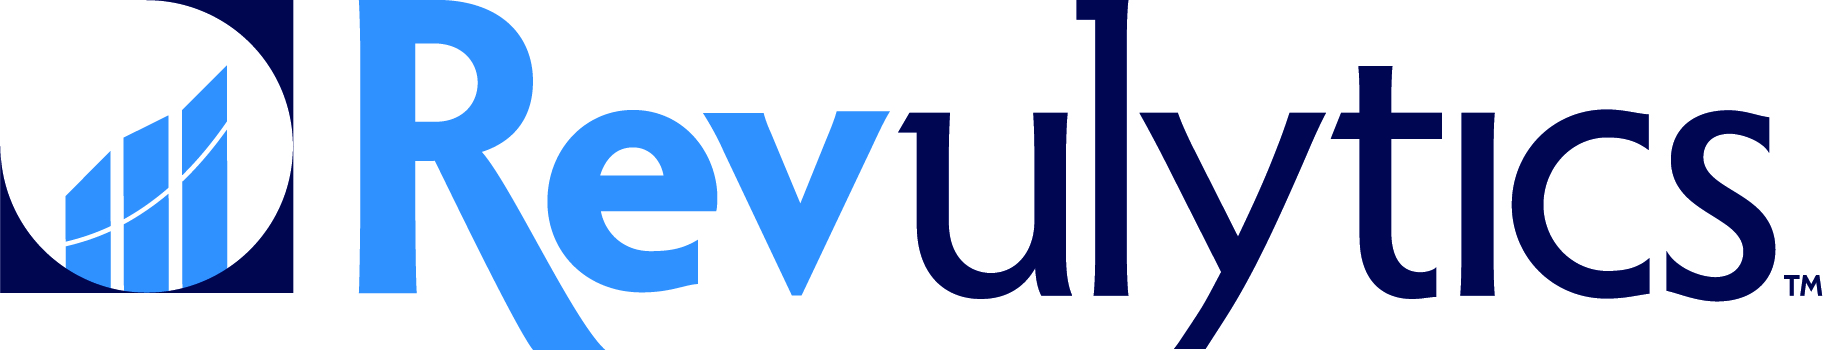 Revulytics Logo.jpg